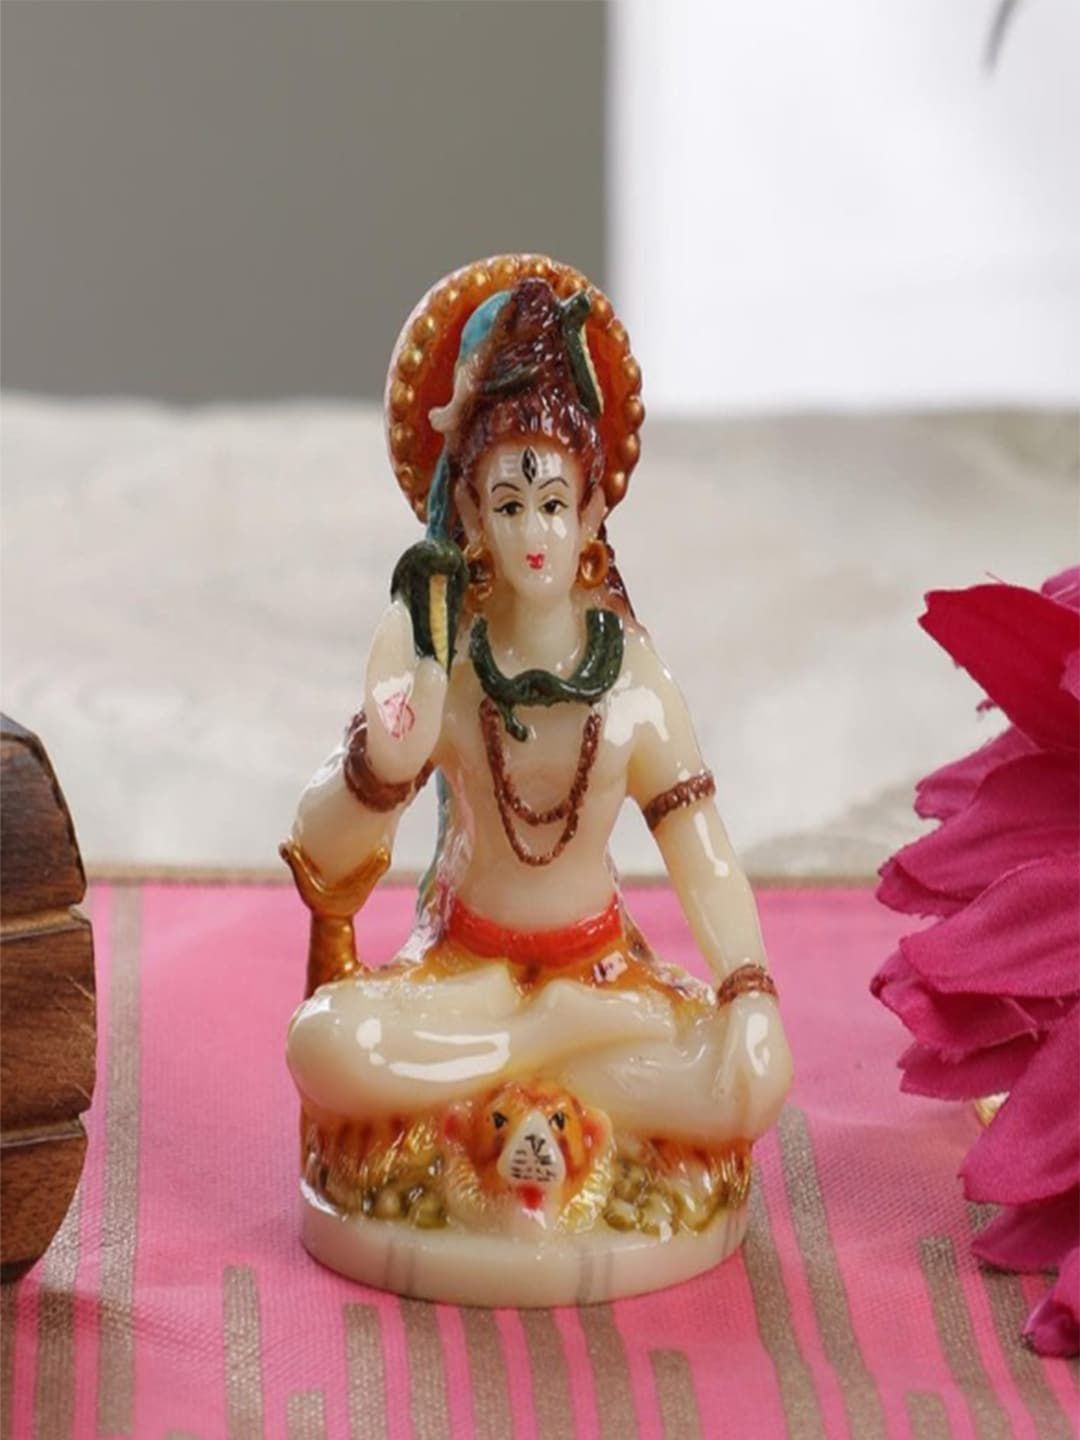 Gallery99 Multi Handpainted Lord Hanuman Idol Price in India